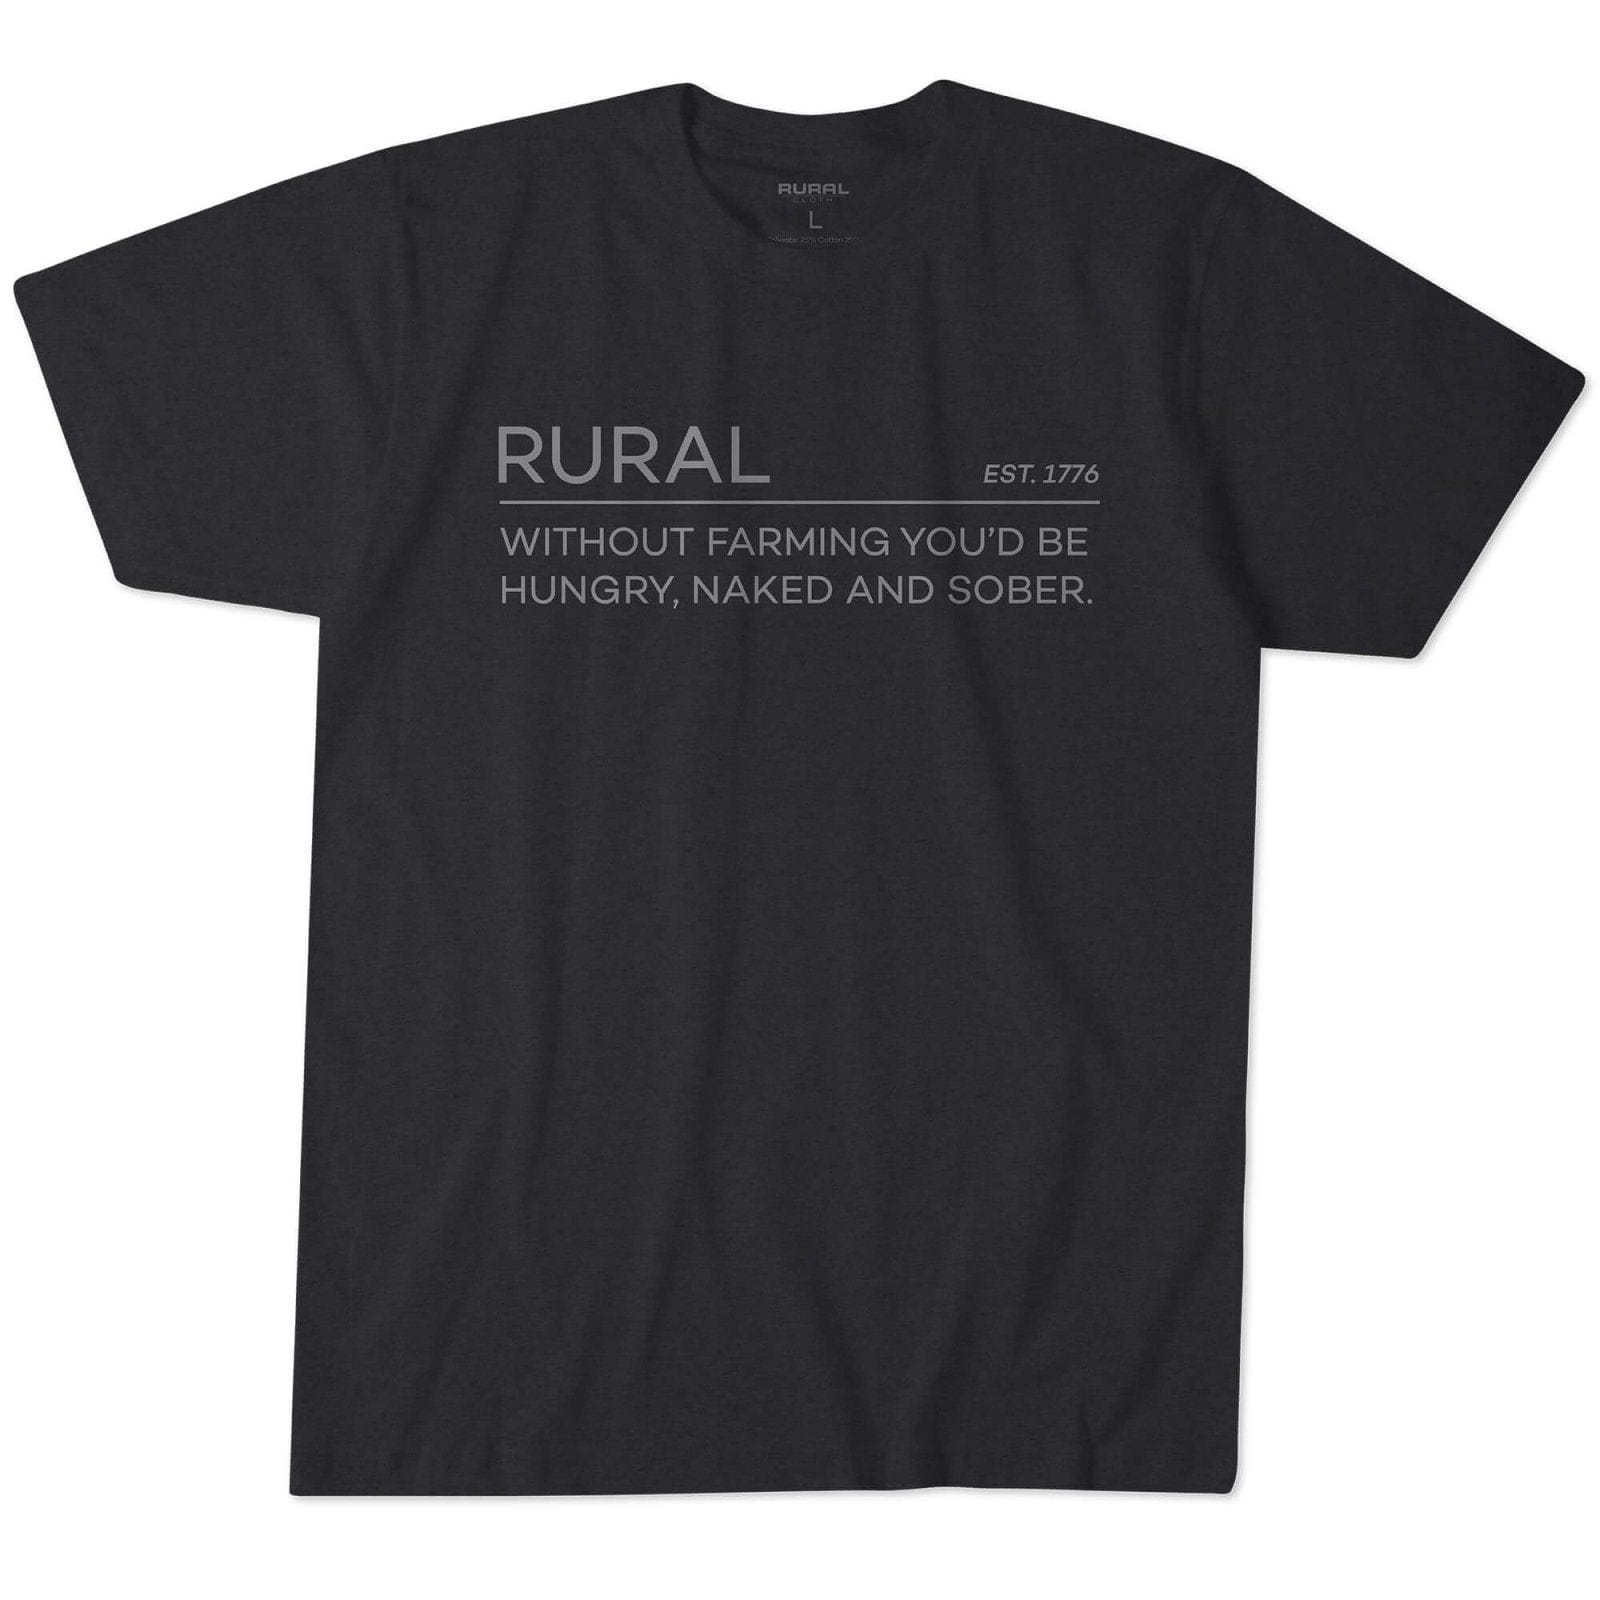 Rural Cloth Shirts Naked and Sober Tee